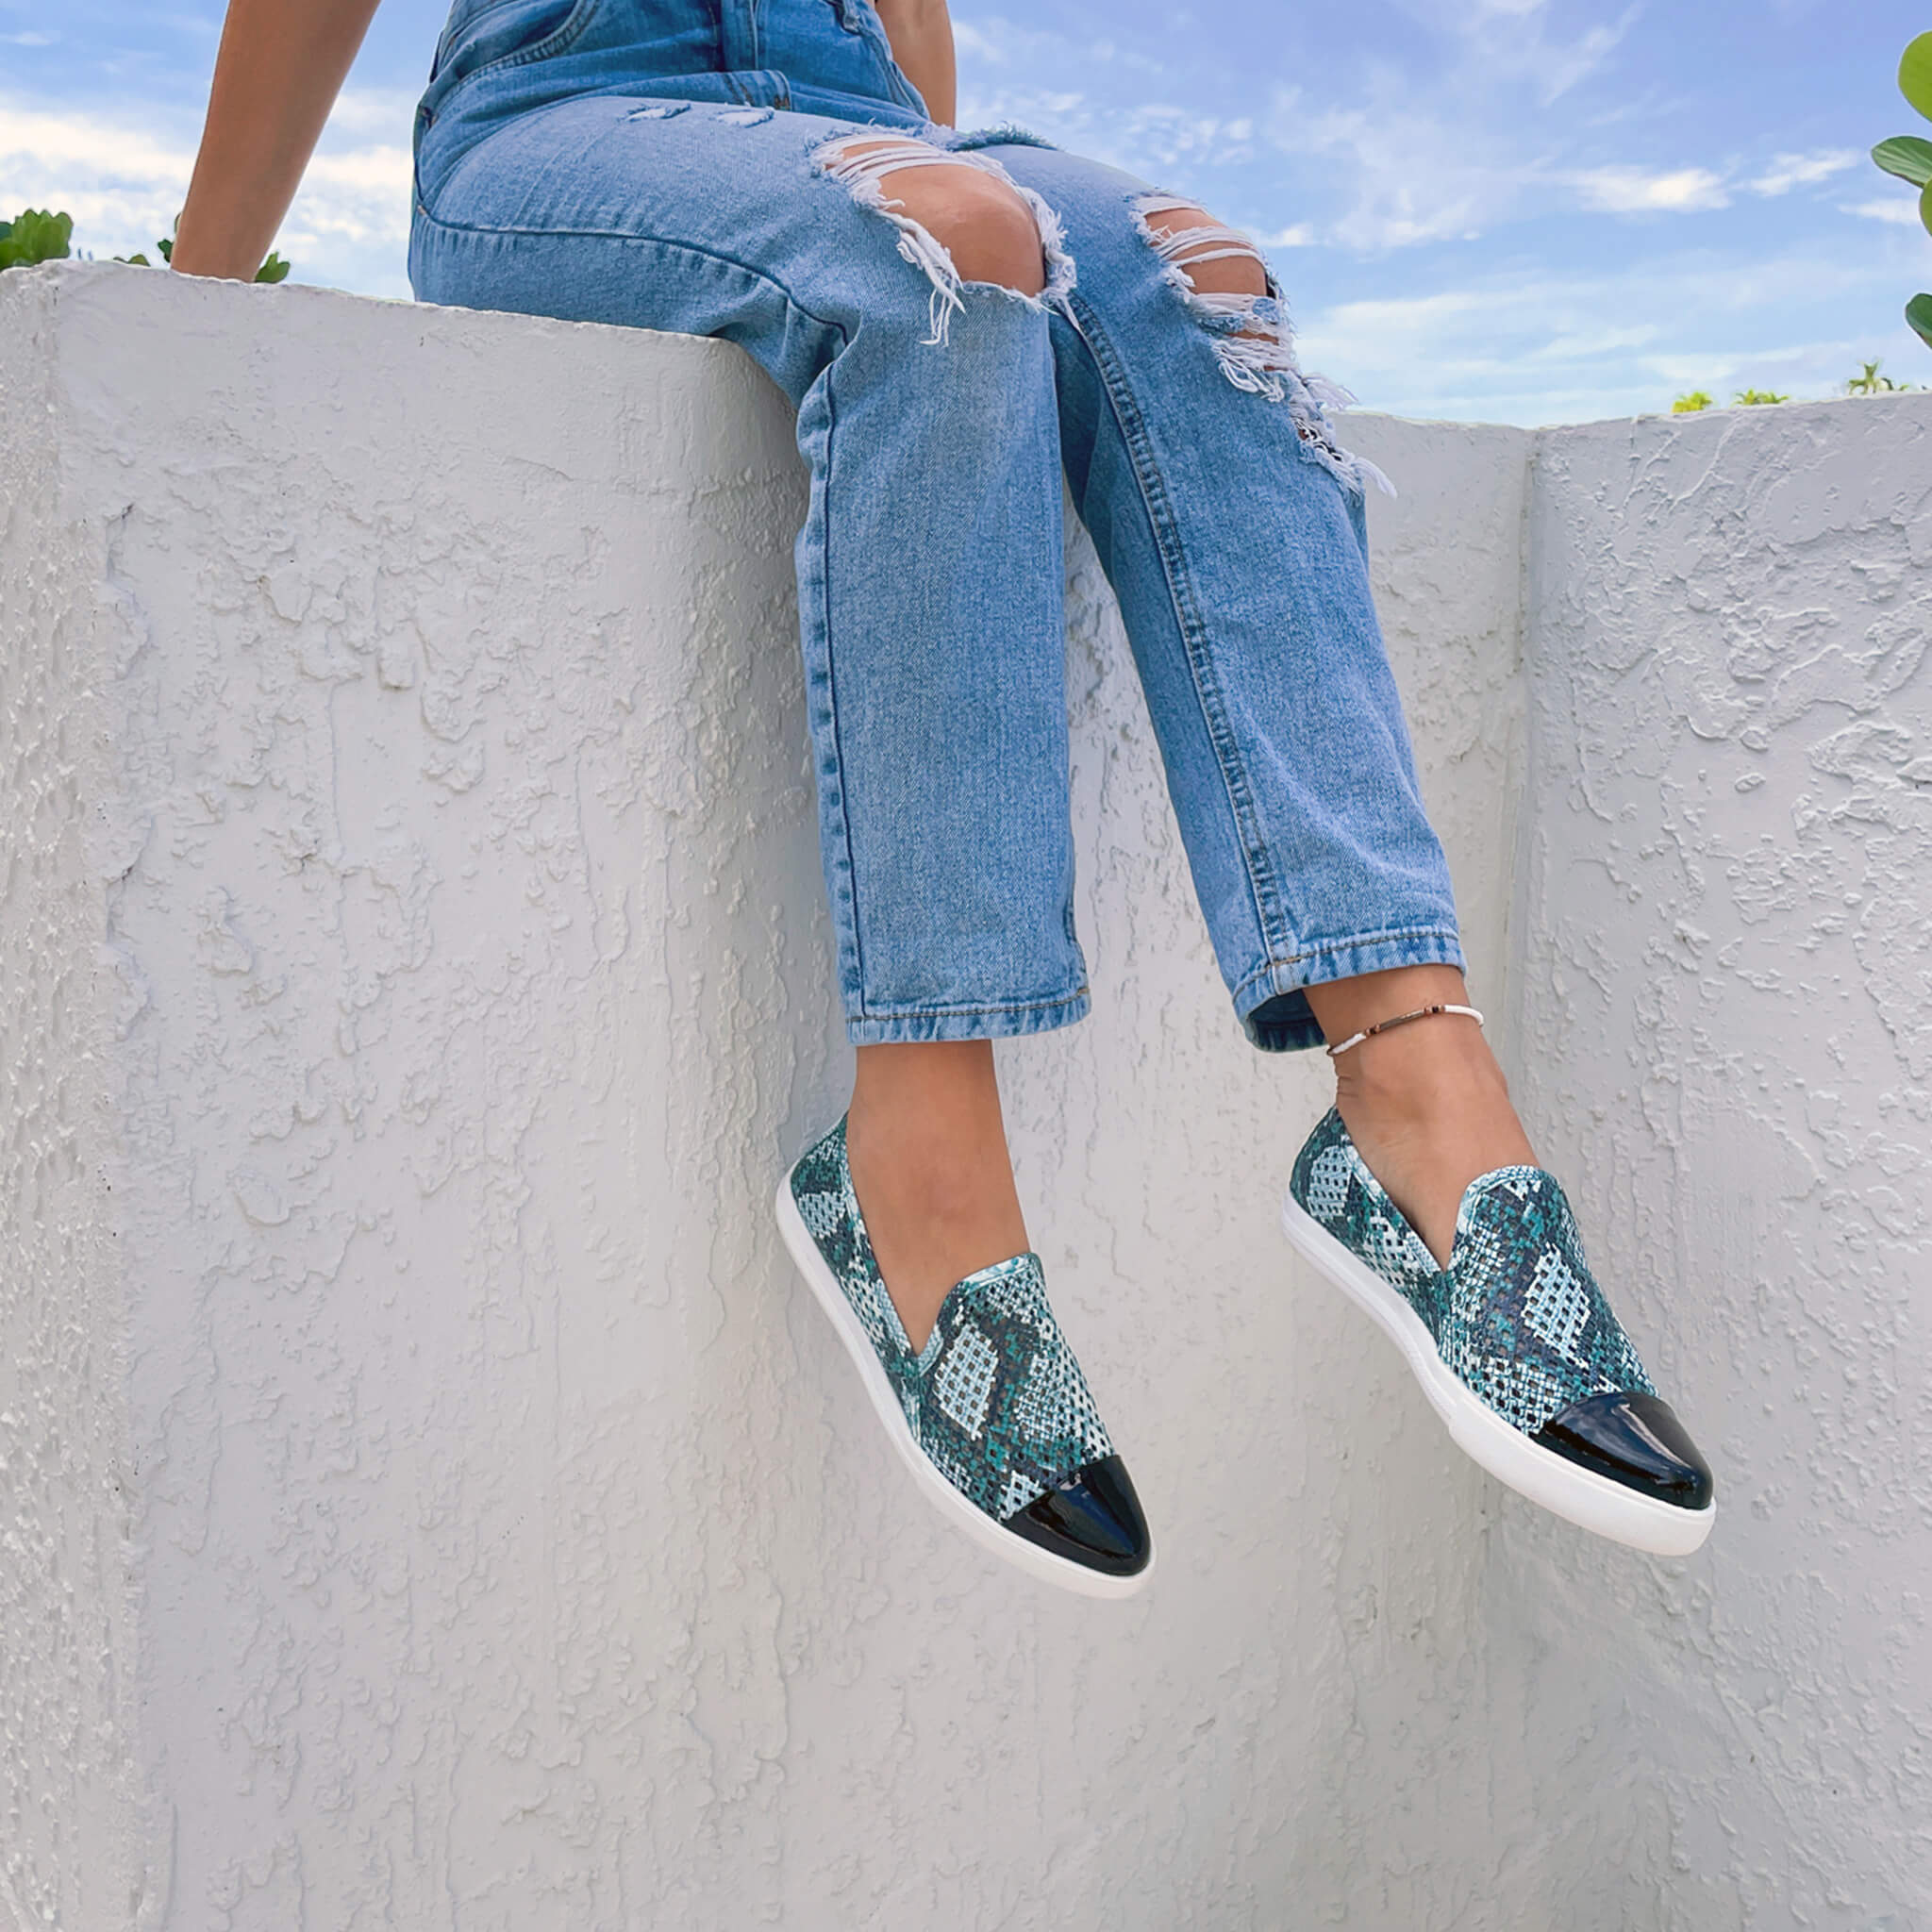 Jibs Slim Teal Python + Onyx Toe Cap Slip On Sneaker Flat Pair Outdoors Womens Hanging